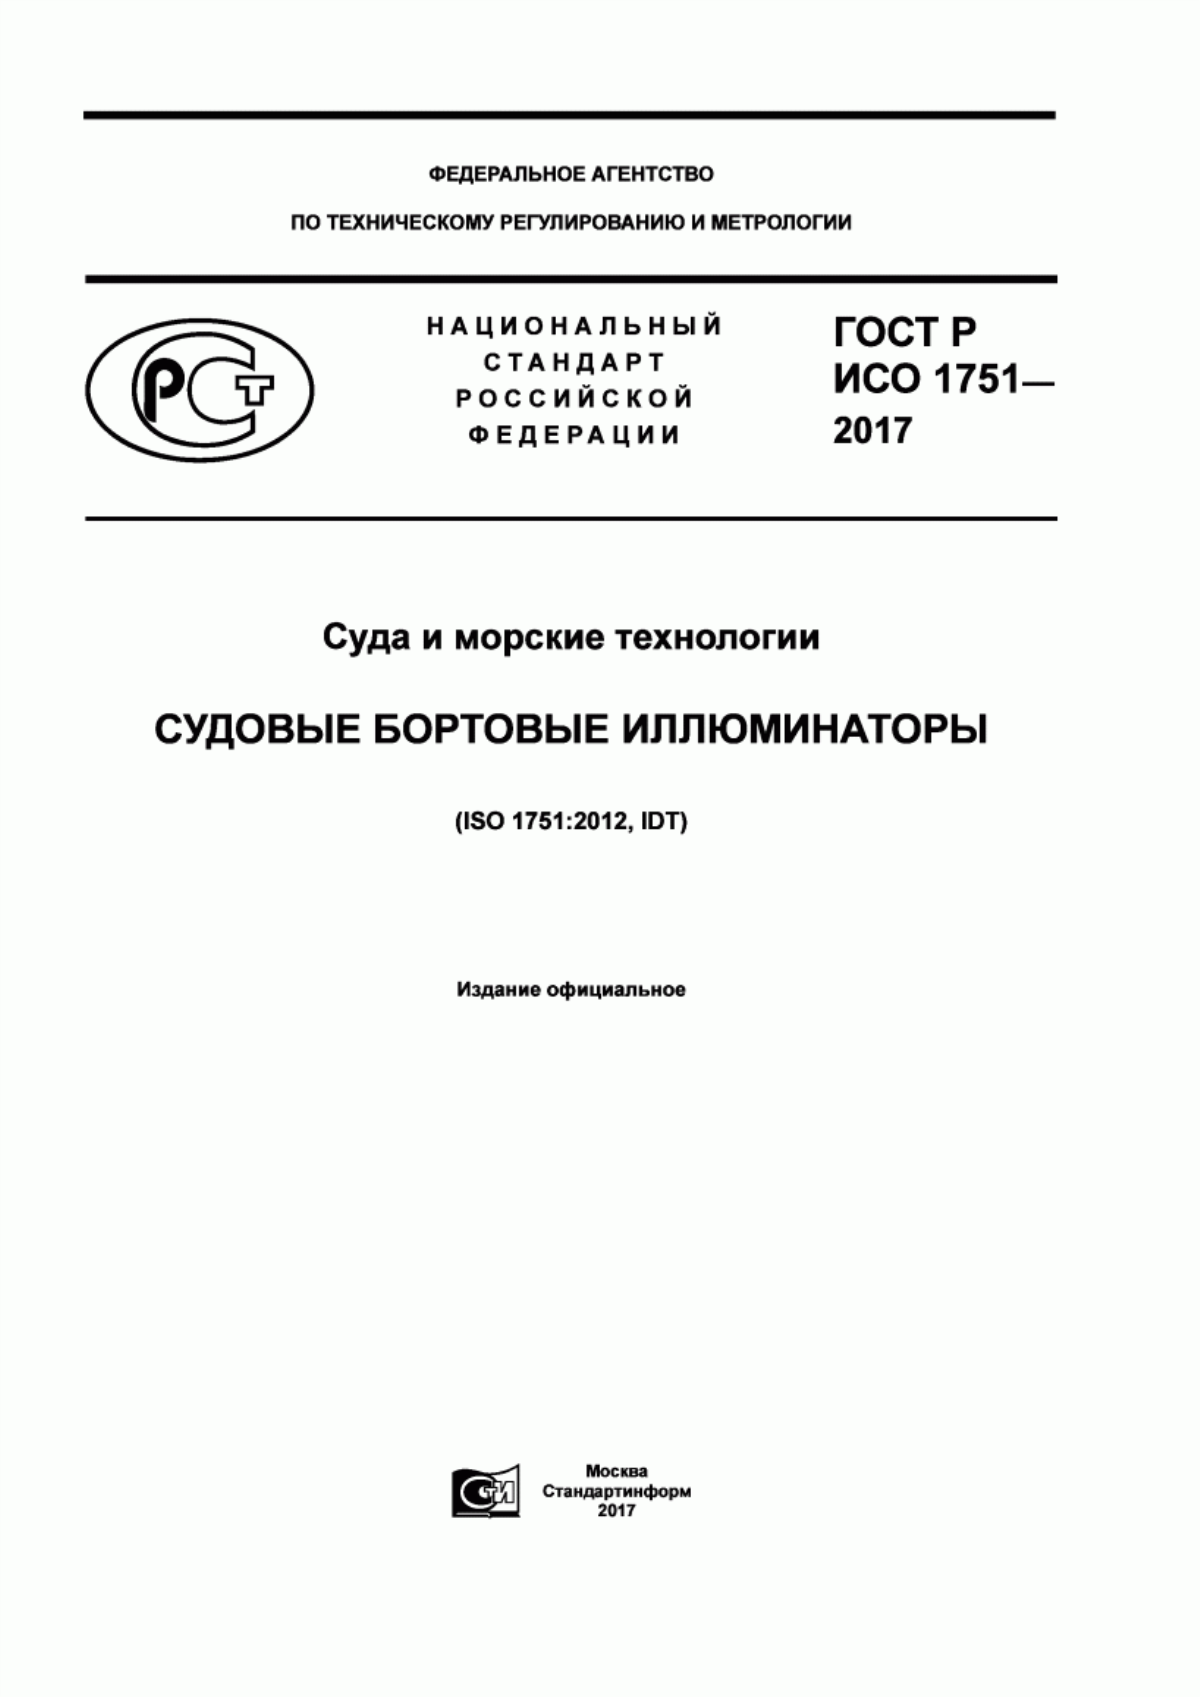 ГОСТ Р ИСО 1751-2017 Суда и морские технологии. Судовые бортовые иллюминаторы